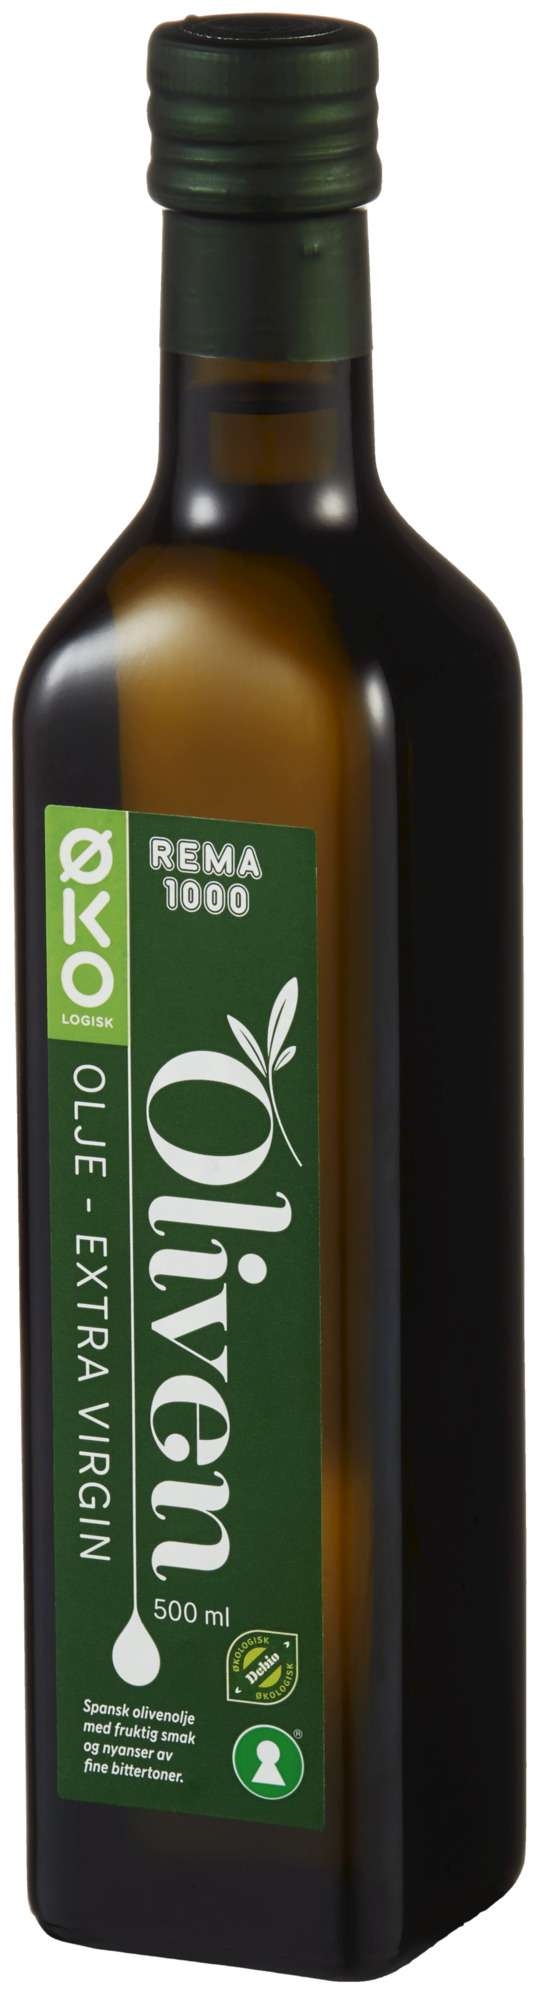 Olivenolje økol. extra virgin   500ml